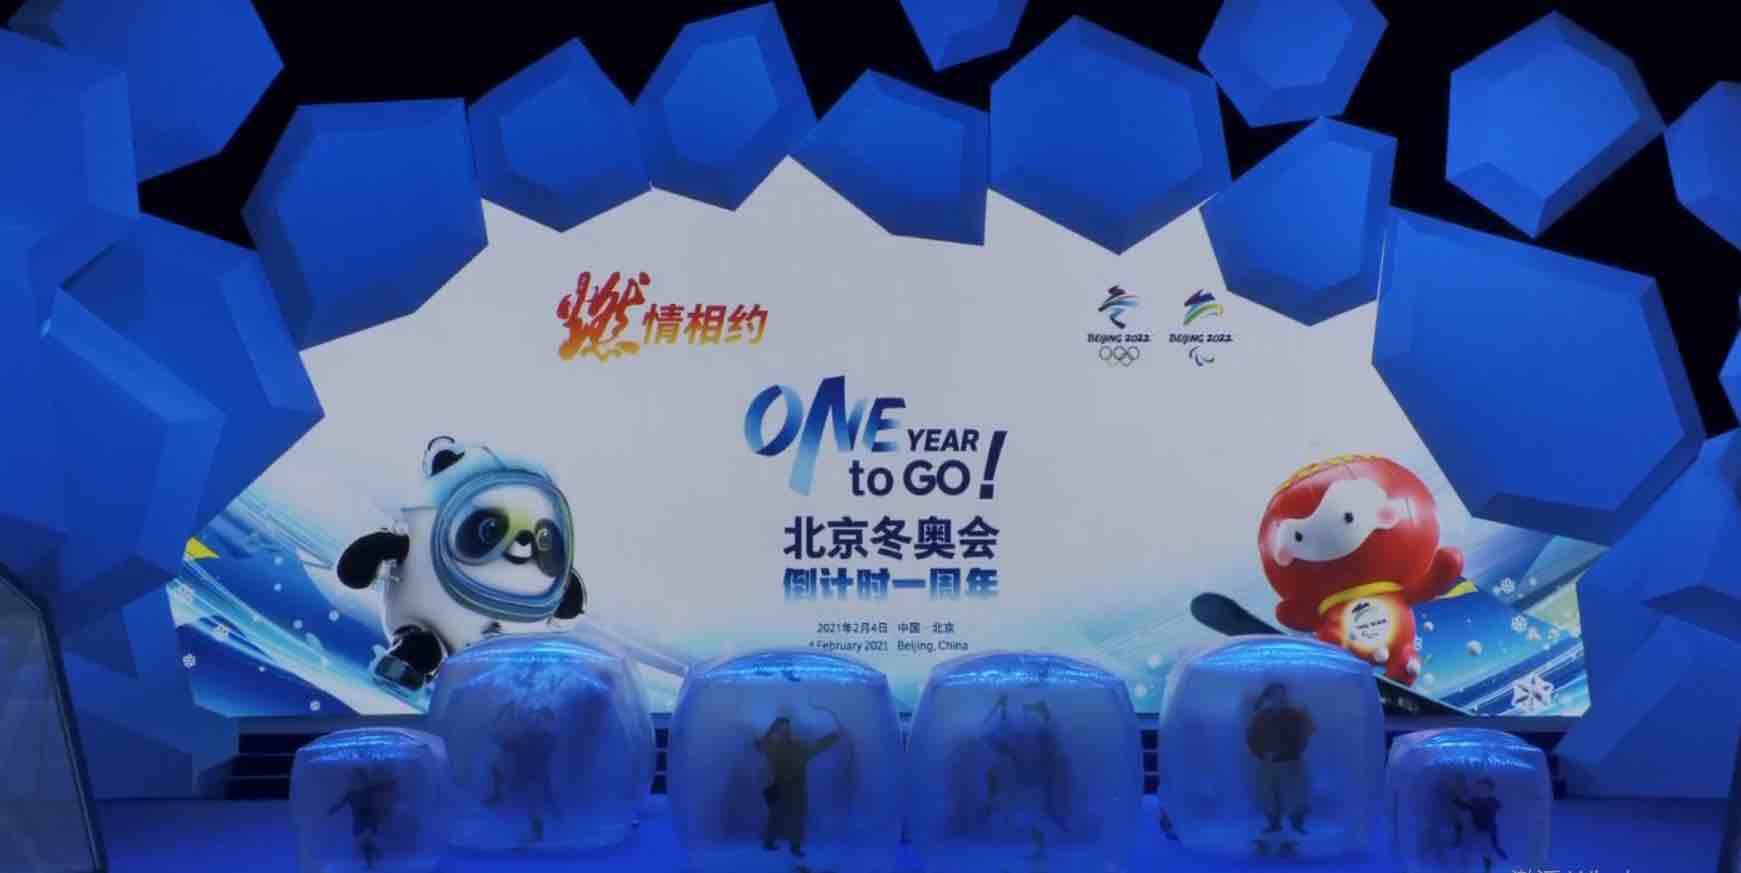 倒计时一周年 北京冬奥会和冬残奥会火炬正式“飞扬”